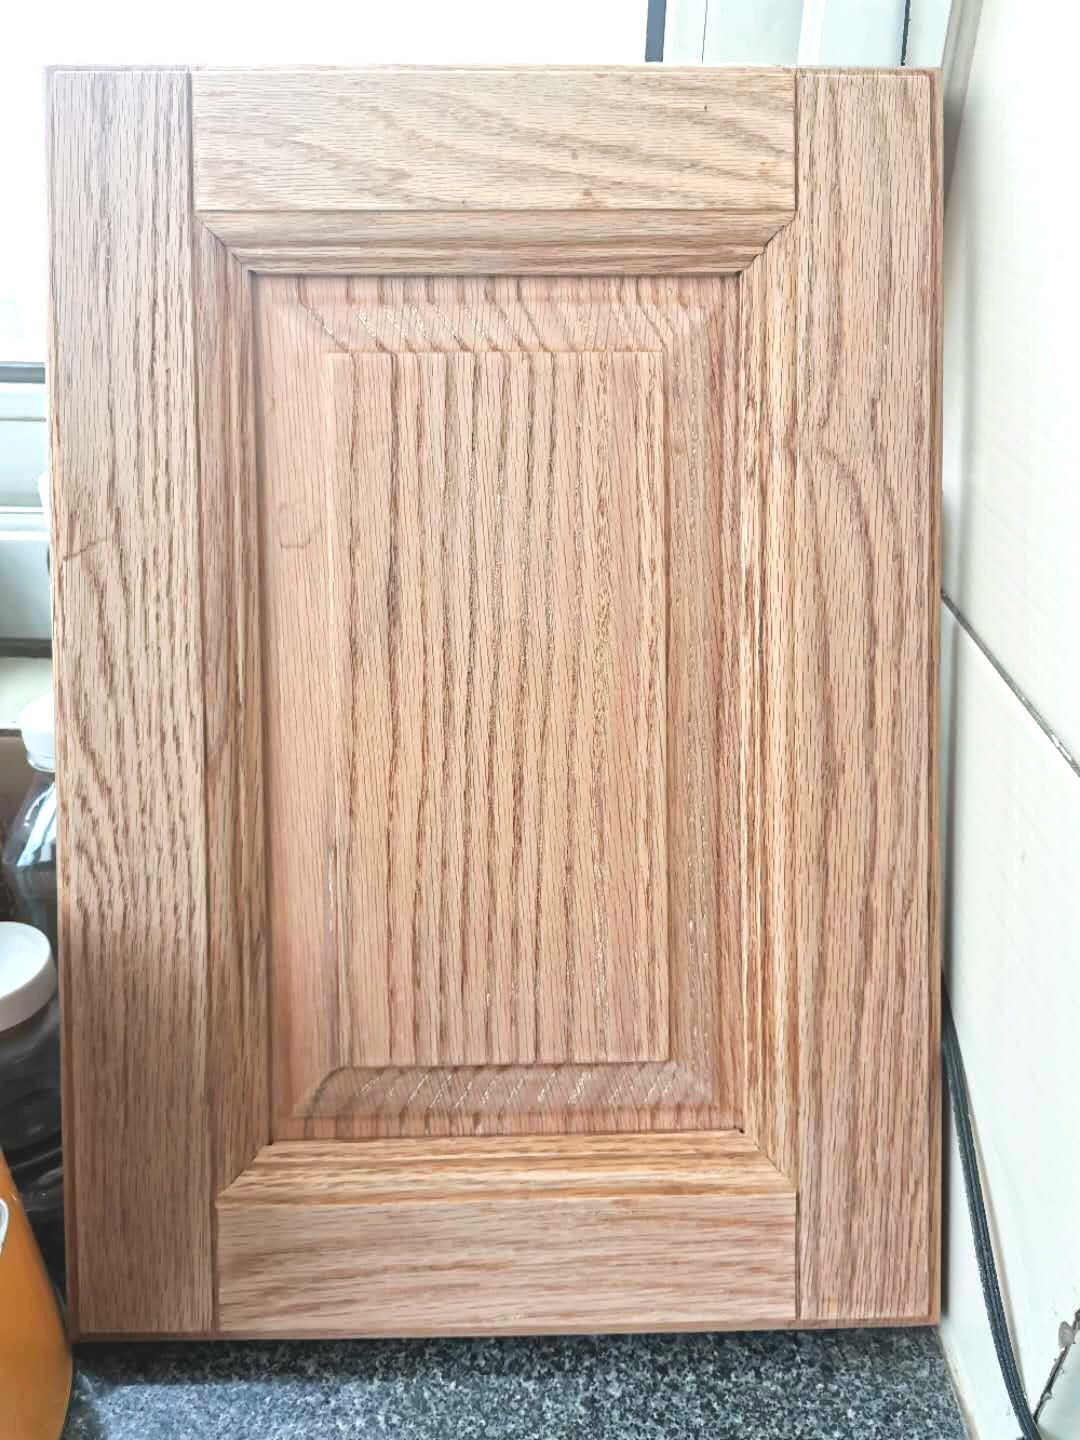 红橡实木柜门用木蜡油可以上色吗?